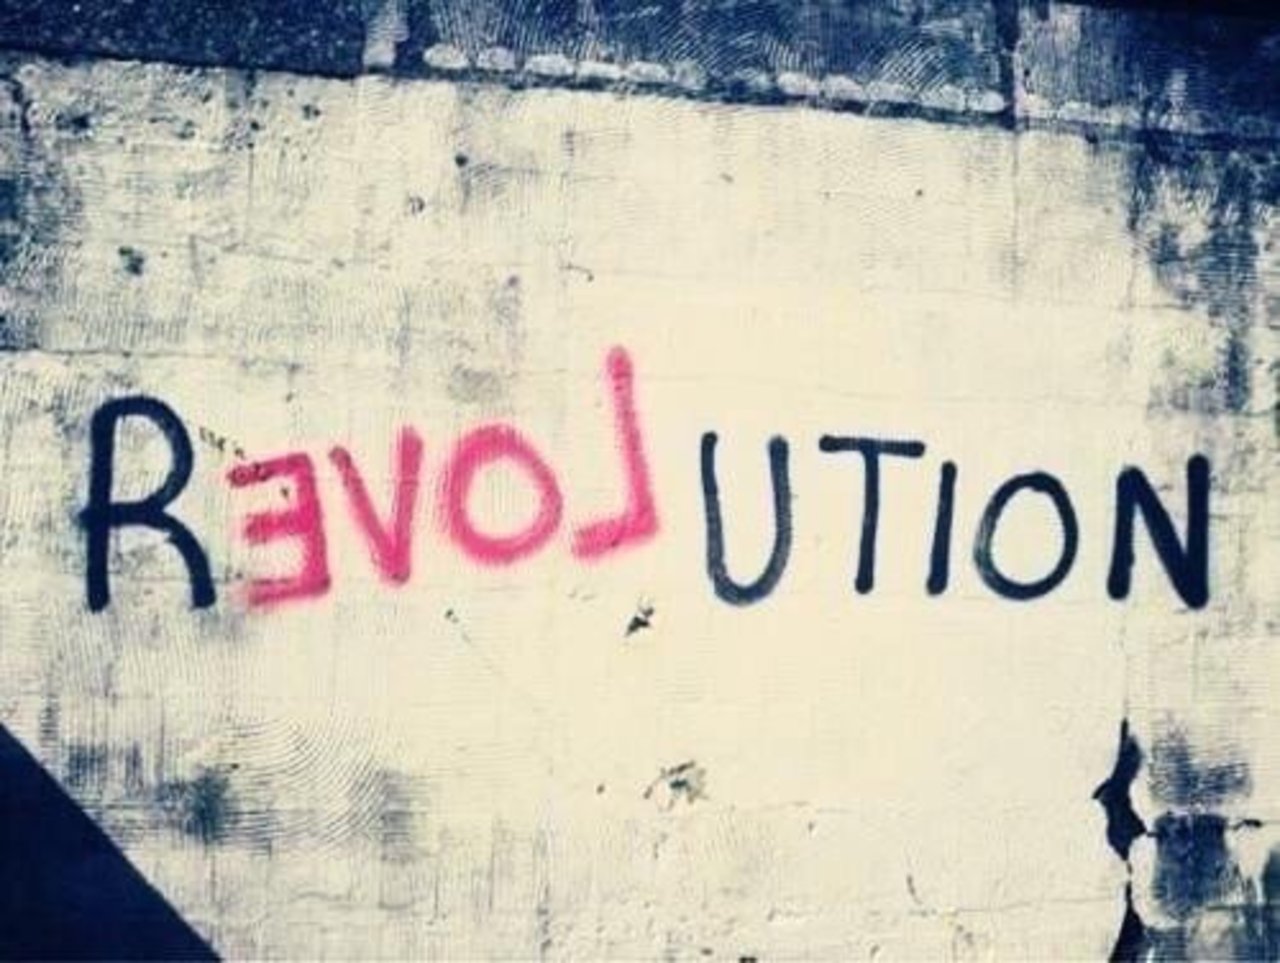 #Love Revolution – #Creative #StreetArt – Be ▲rtist – Be ▲rt Magazine https://beartistbeart.com/2016/12/02/love-revolution-creative-streetart/?utm_campaign=crowdfire&utm_content=crowdfire&utm_medium=social&utm_source=twitter https://t.co/384pXQzcLg